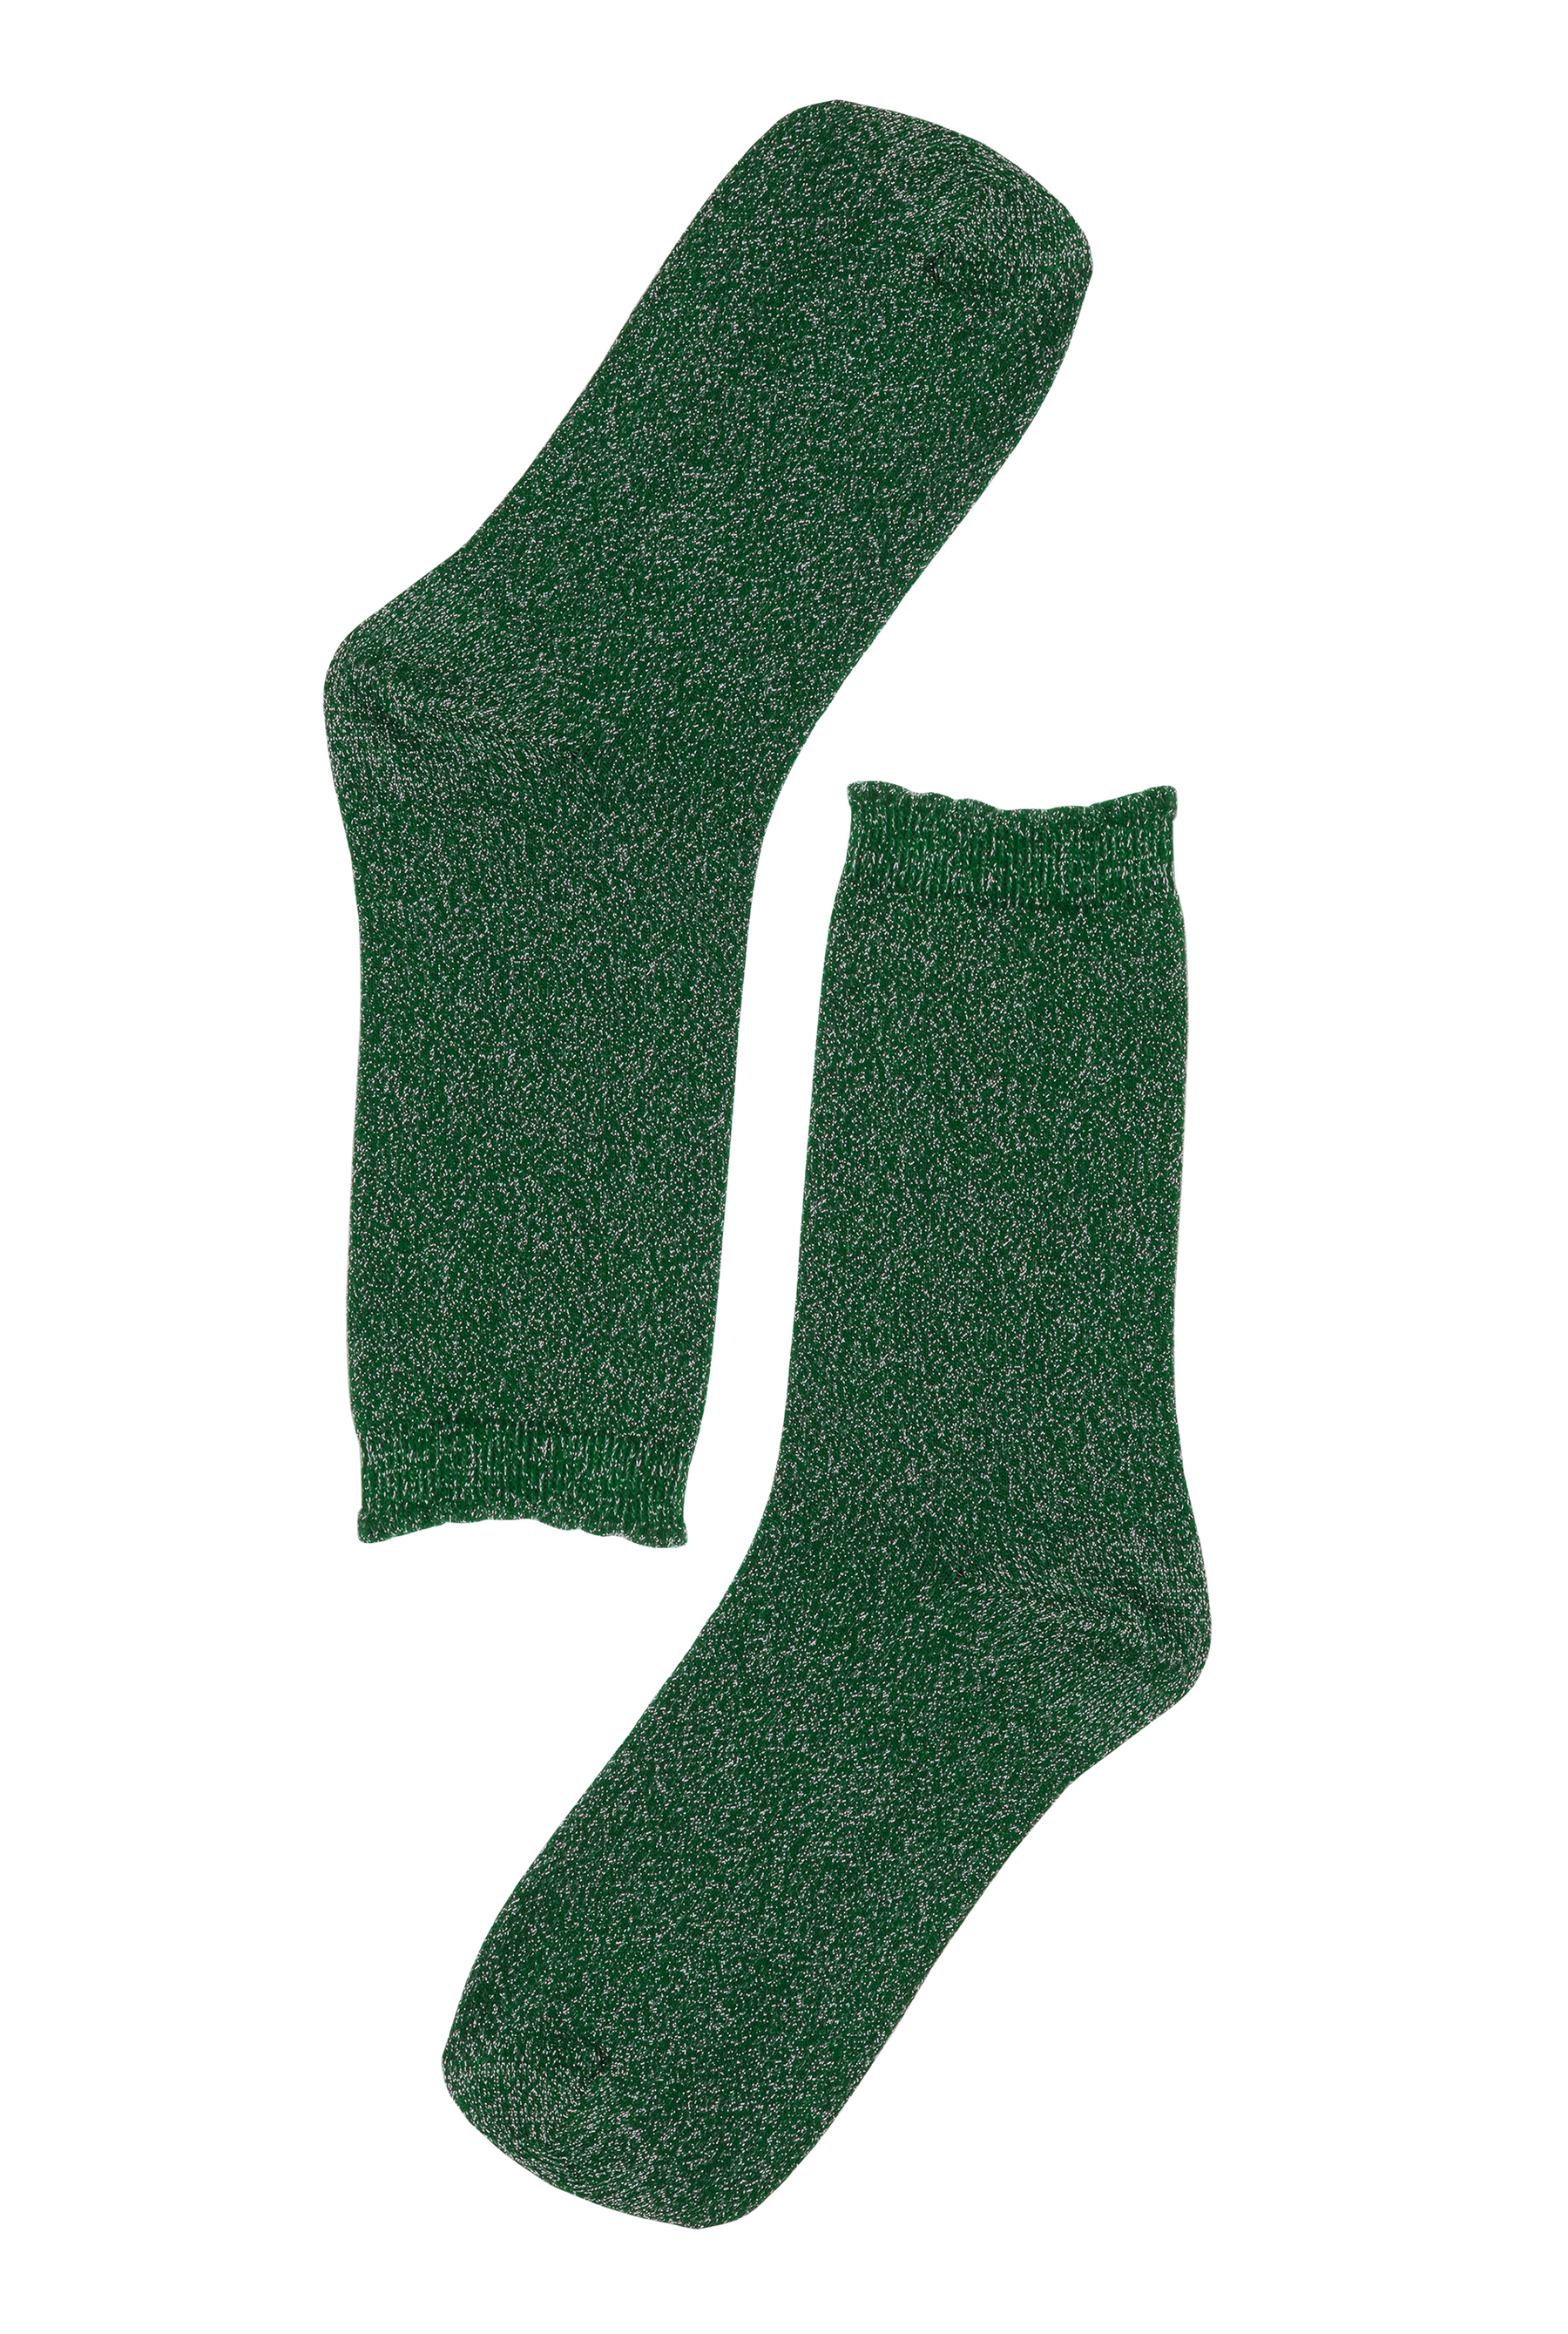 Chaussettes vertes à paillettes pour femme, coton BIO